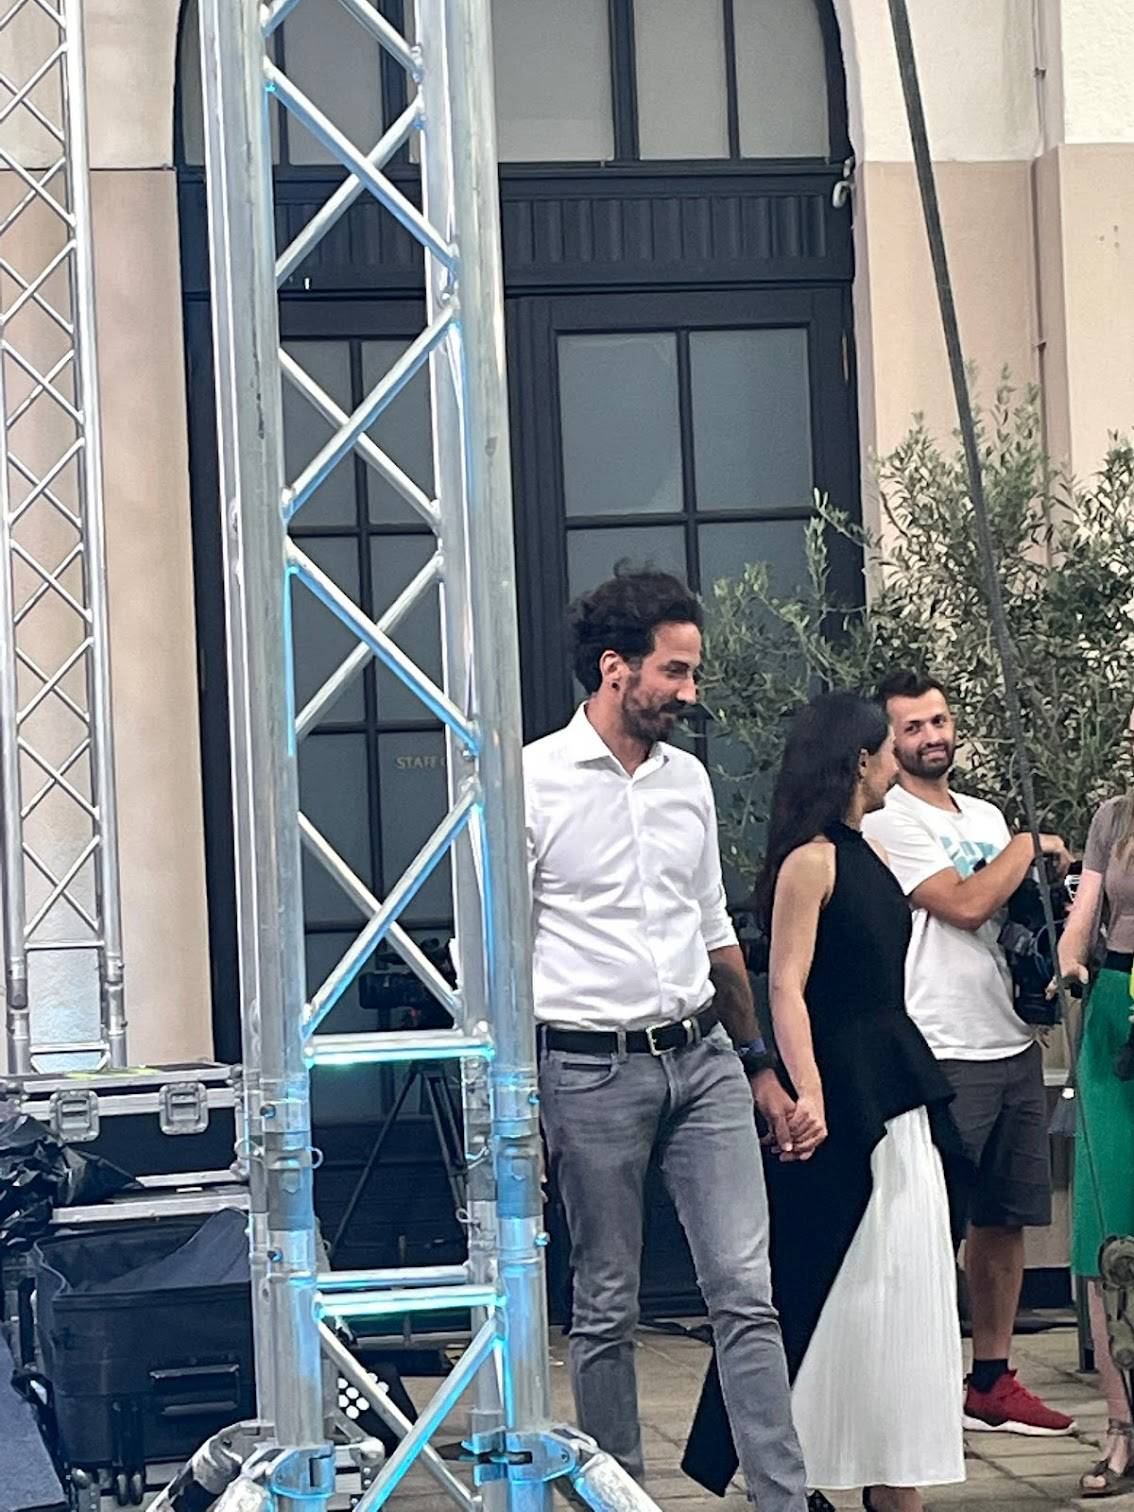 Glumica i političar Miletić opet 'uhvaćeni': 'Držali su se za ruke, izgledali su vrlo zaljubljeno'